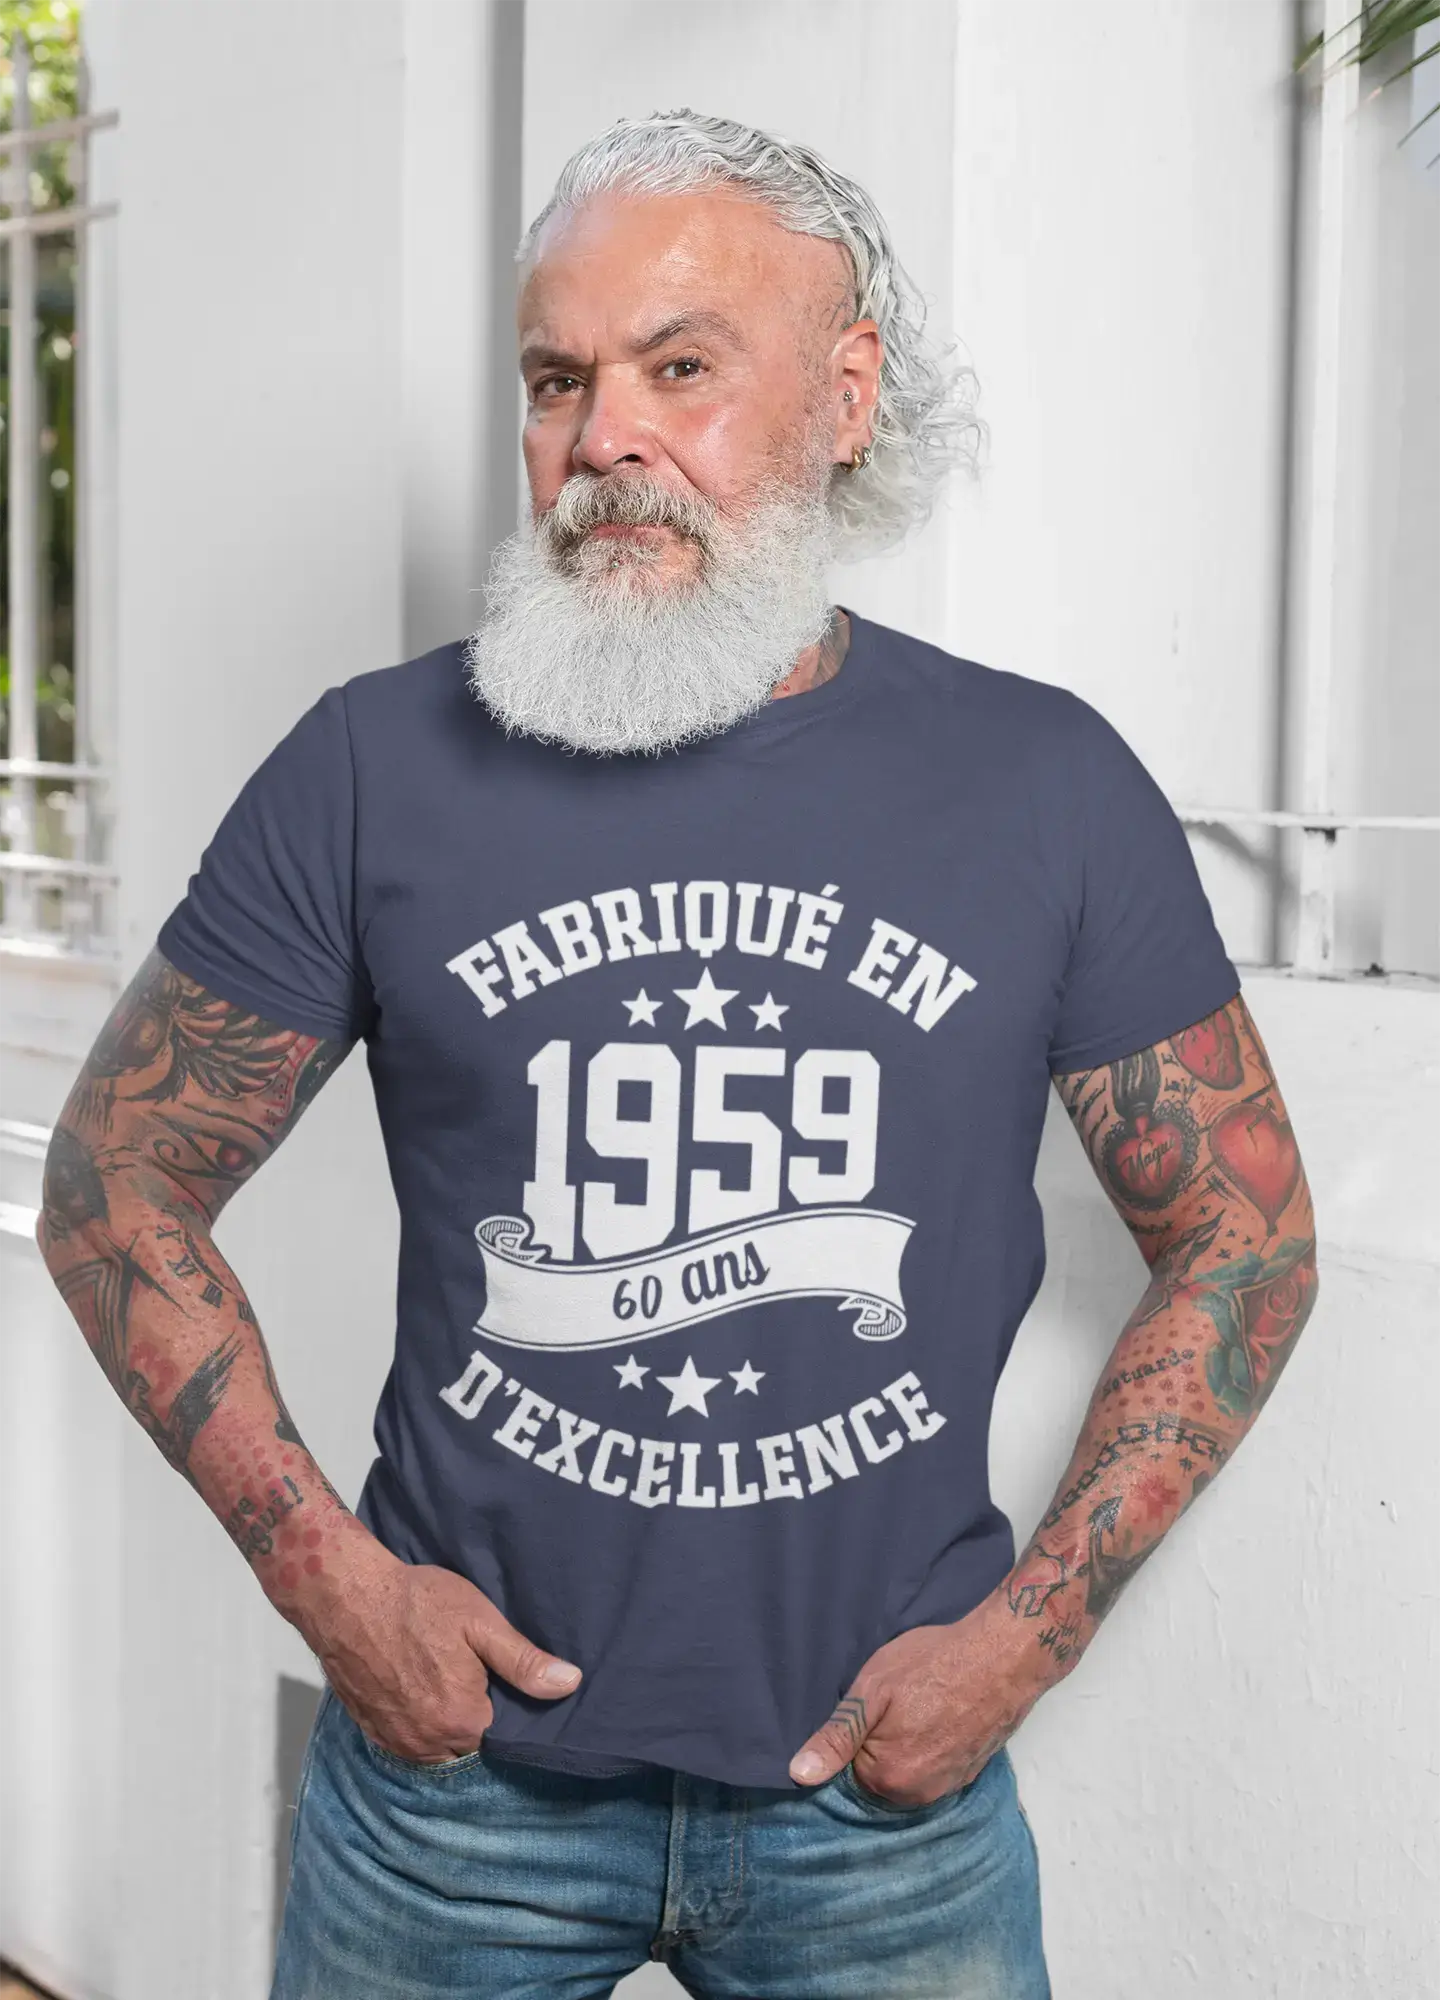 ULTRABASIC – Hergestellt im Jahr 1959, 60 Jahre alt. Geniales Unisex-T-Shirt aus Denim